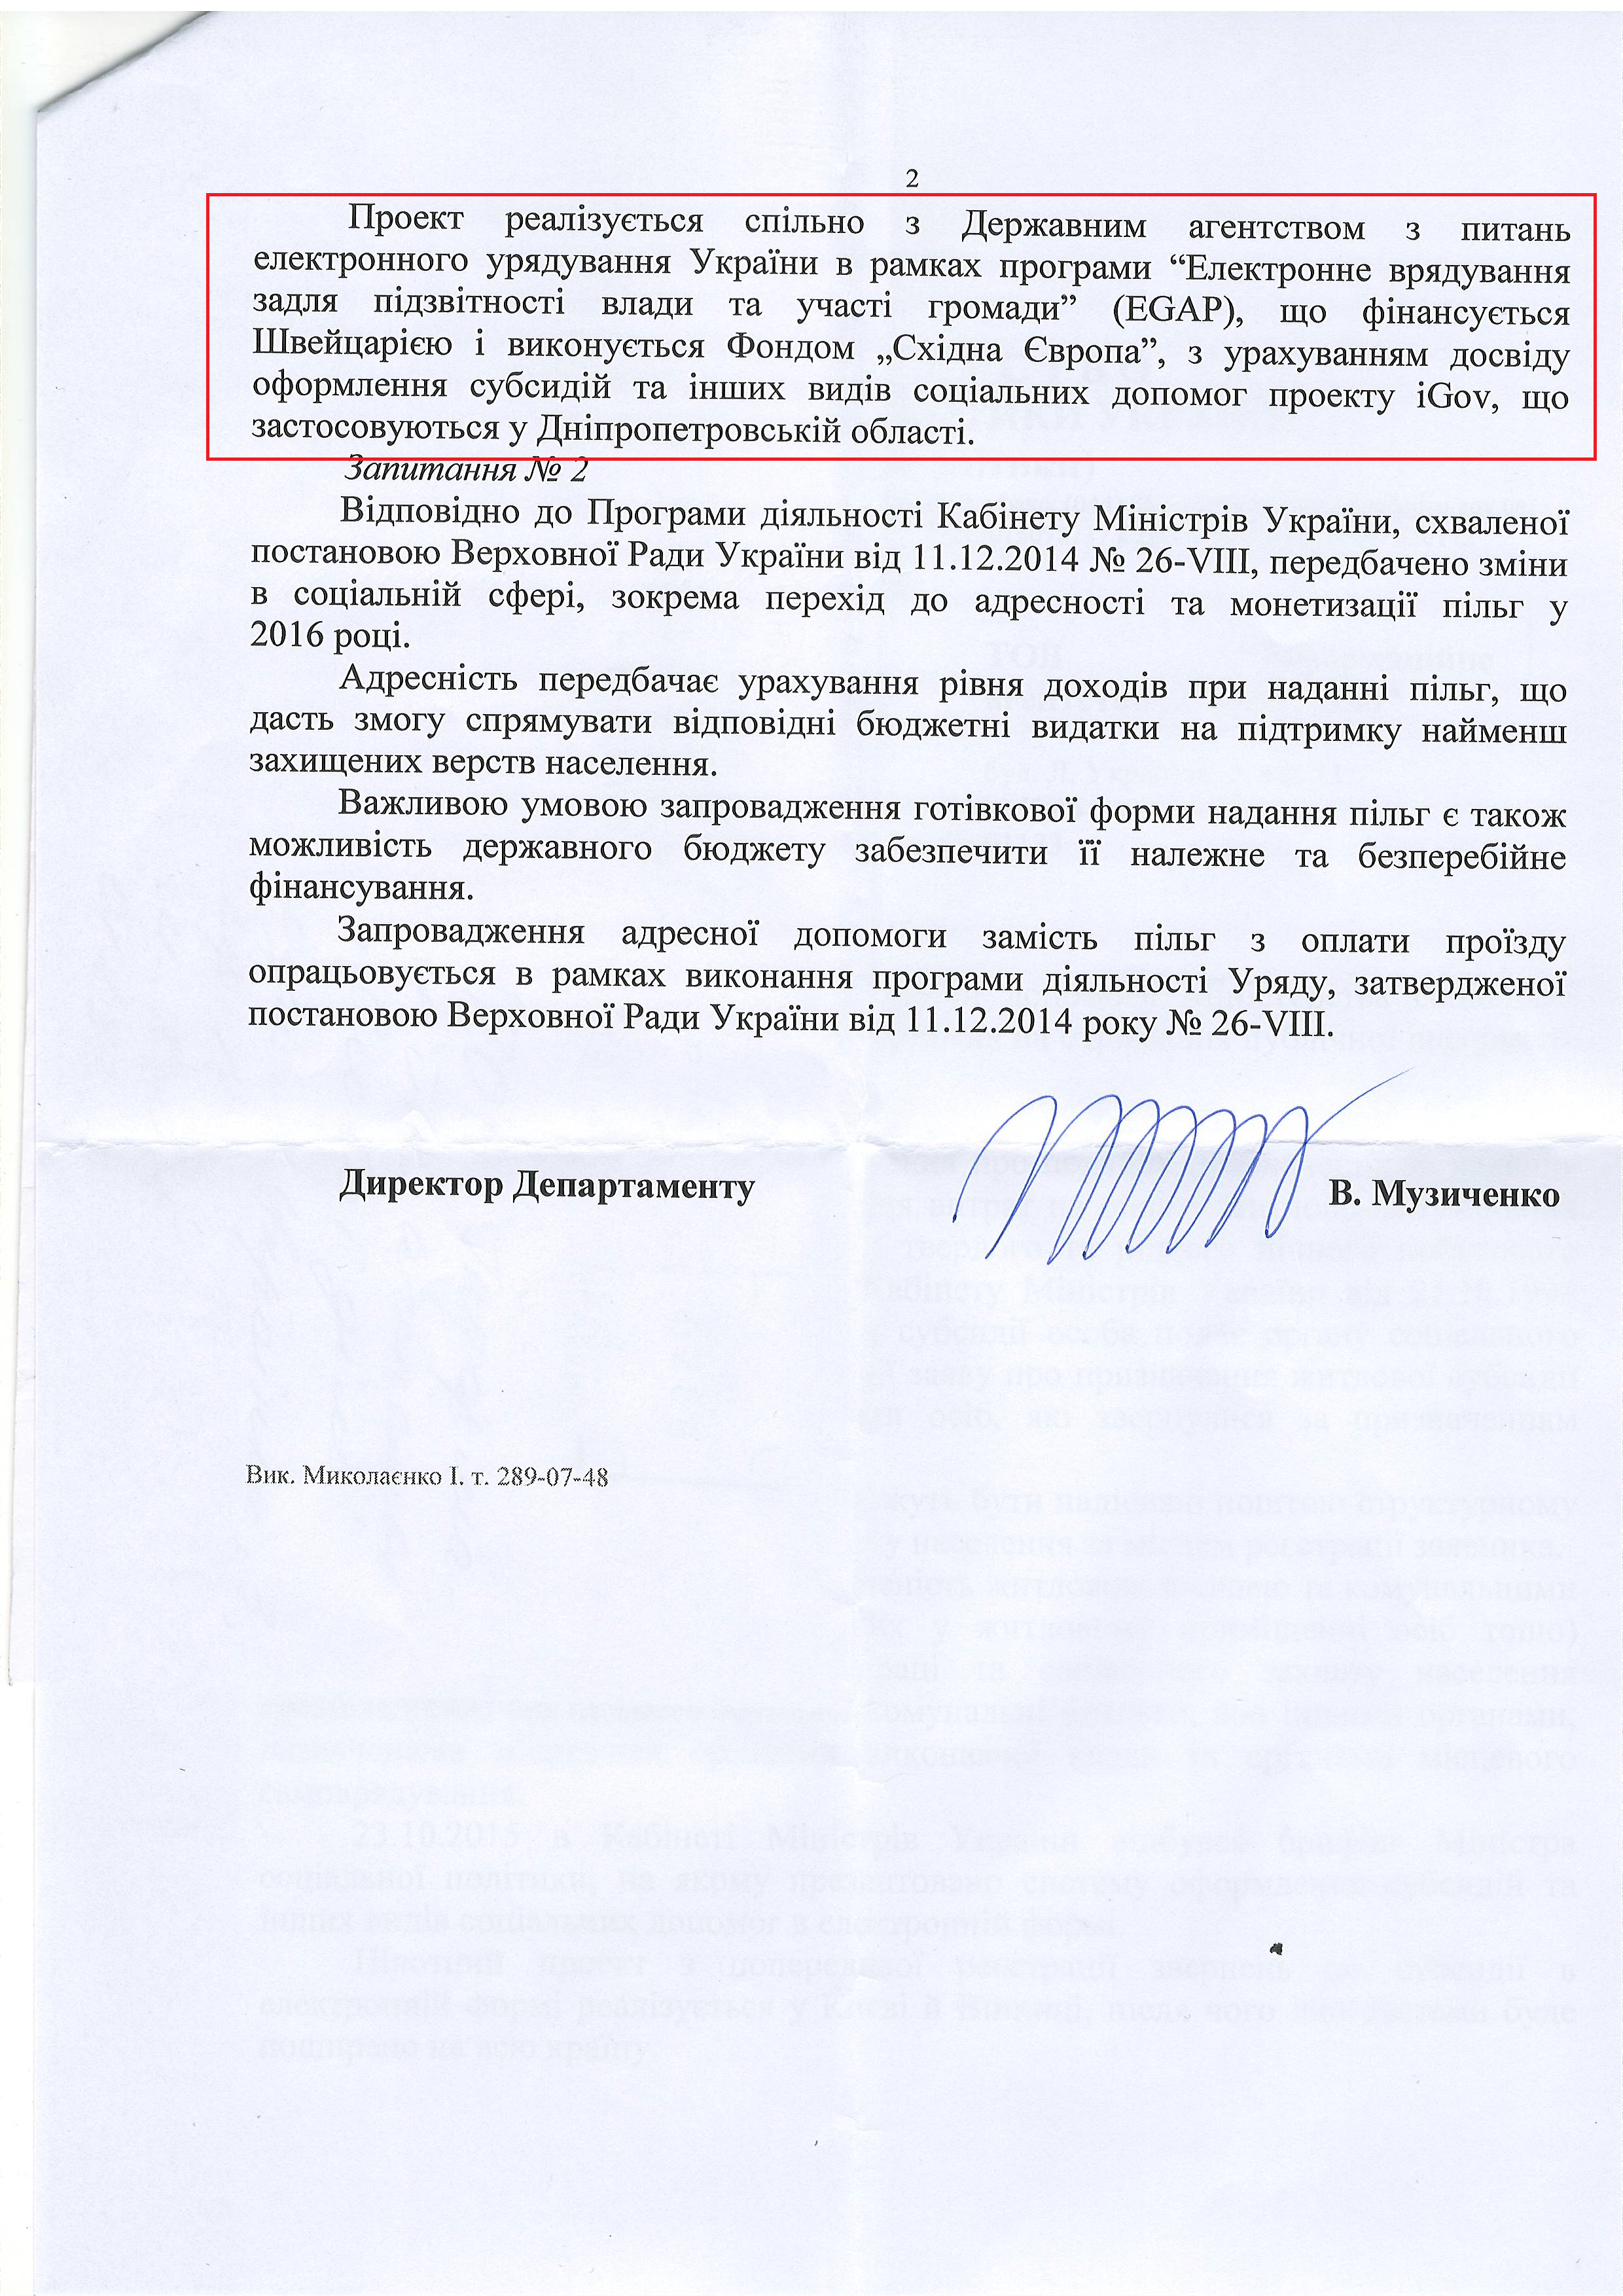 Лист Міністерства соціальної політики України від 3 листопада 2015 року